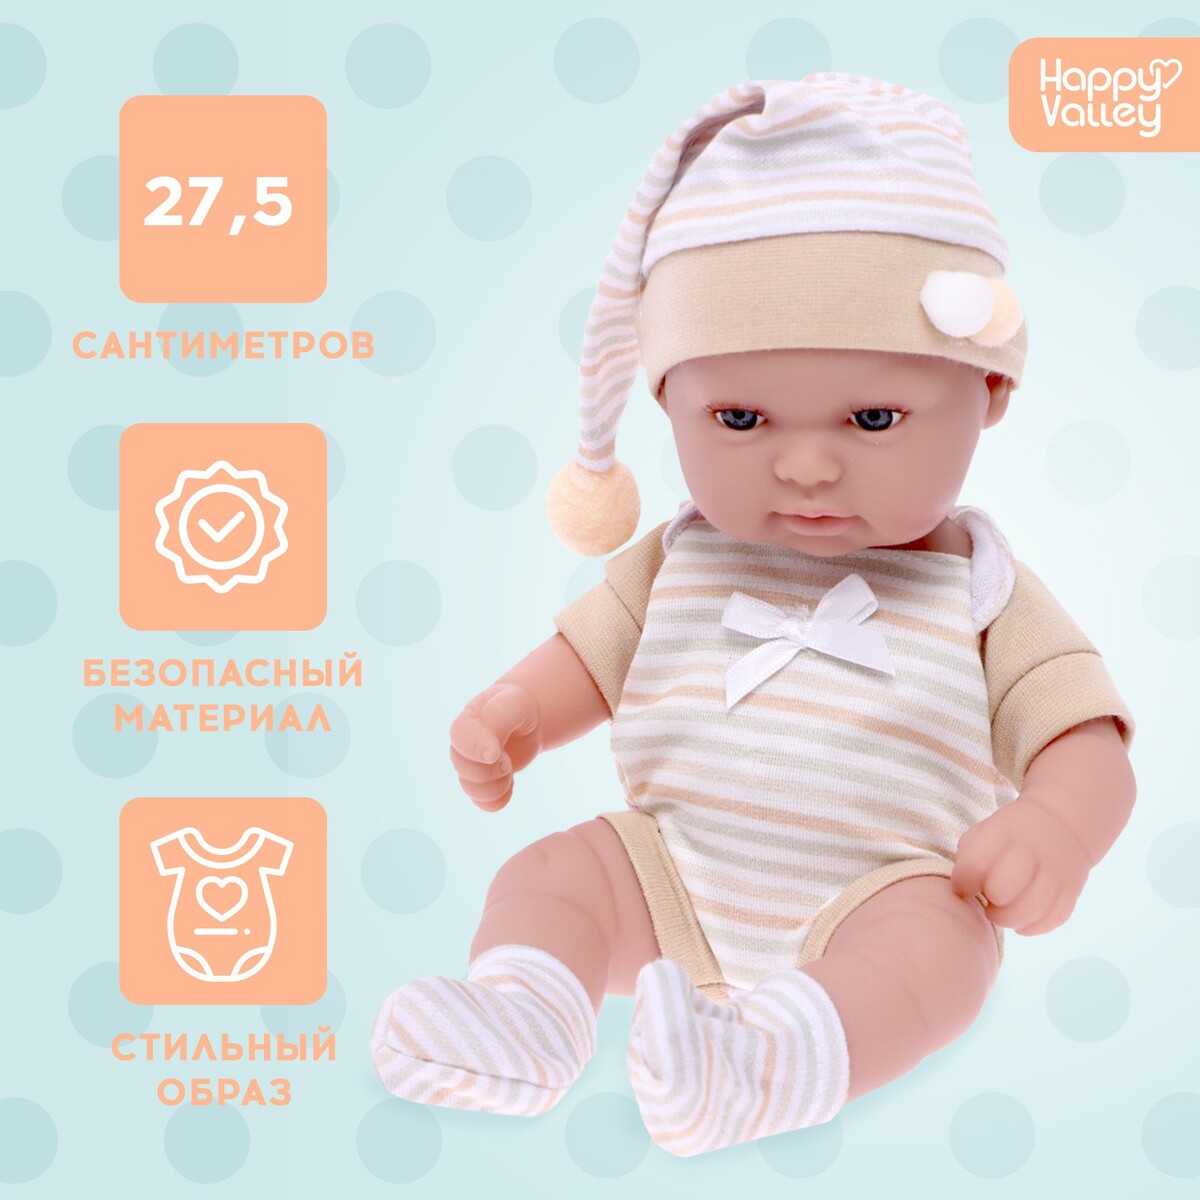 Пупс baby of dreams, premium edition shantou одежда для куклы 45 см боди и шапочка yale baby синяя blc59